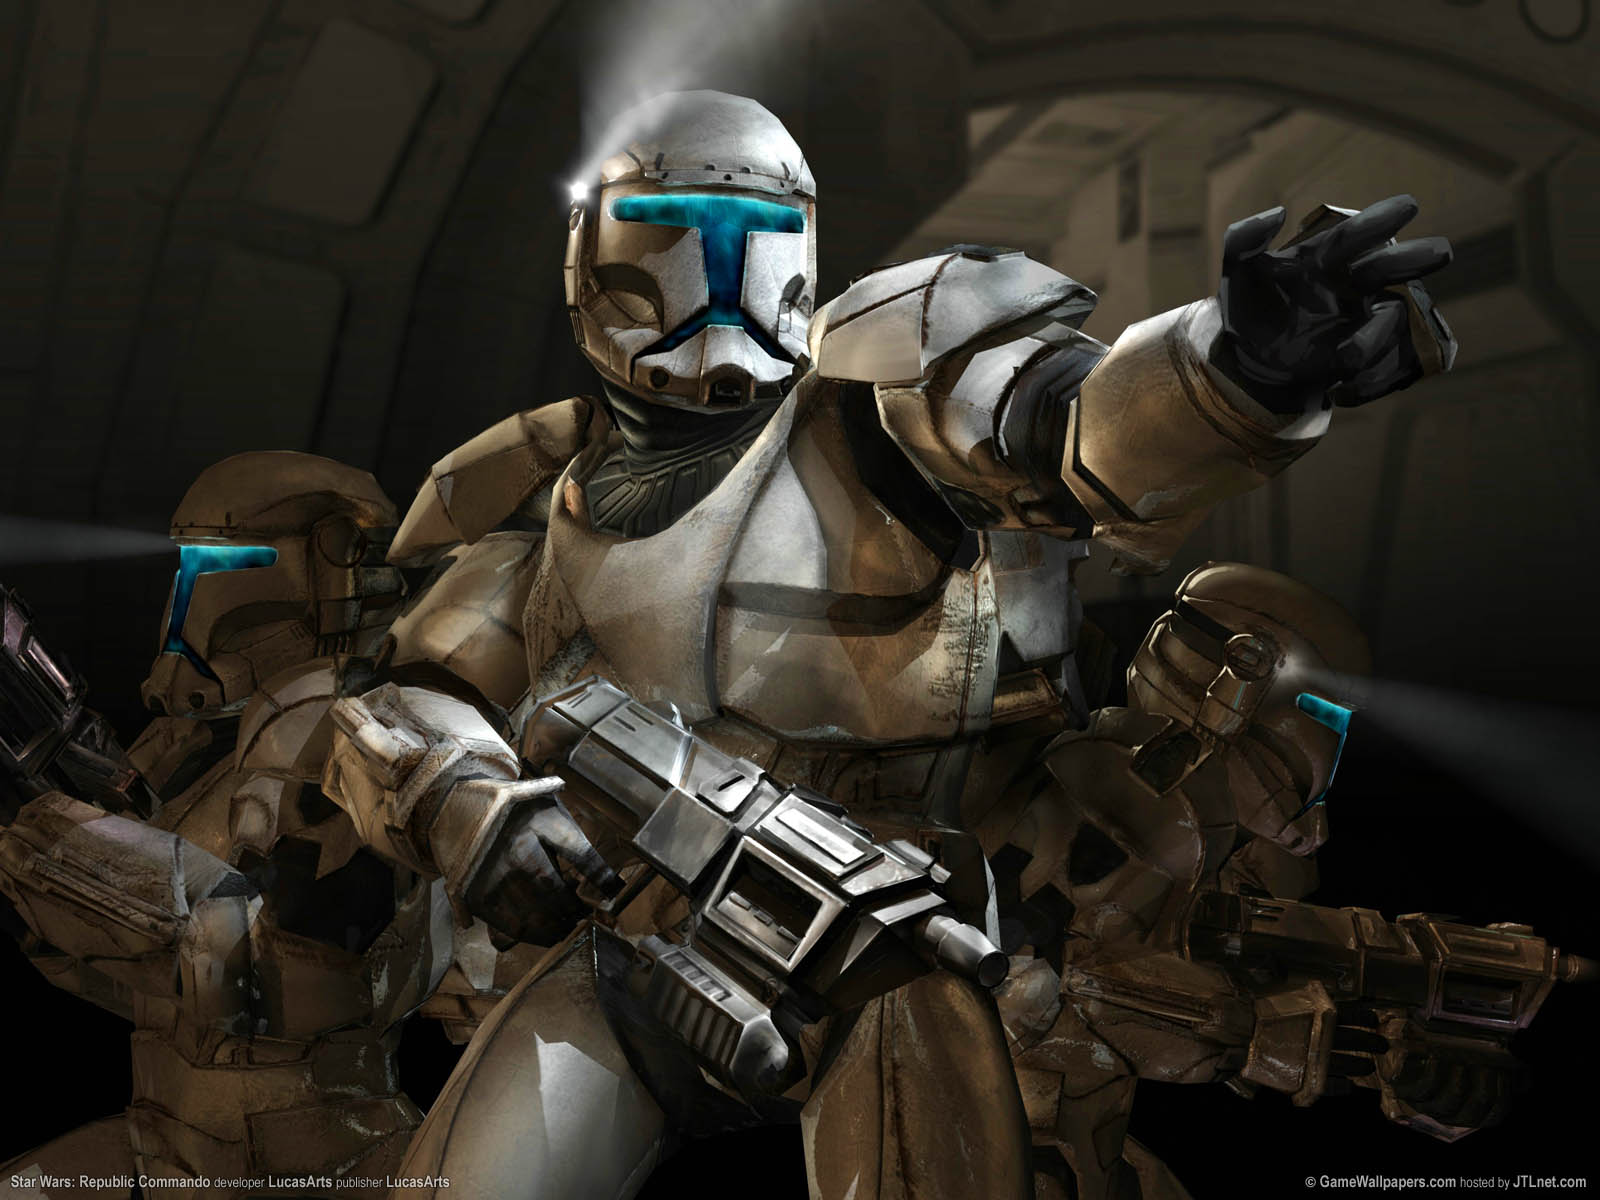 Star Wars: Republic Commando fond d'cran 01 1600x1200